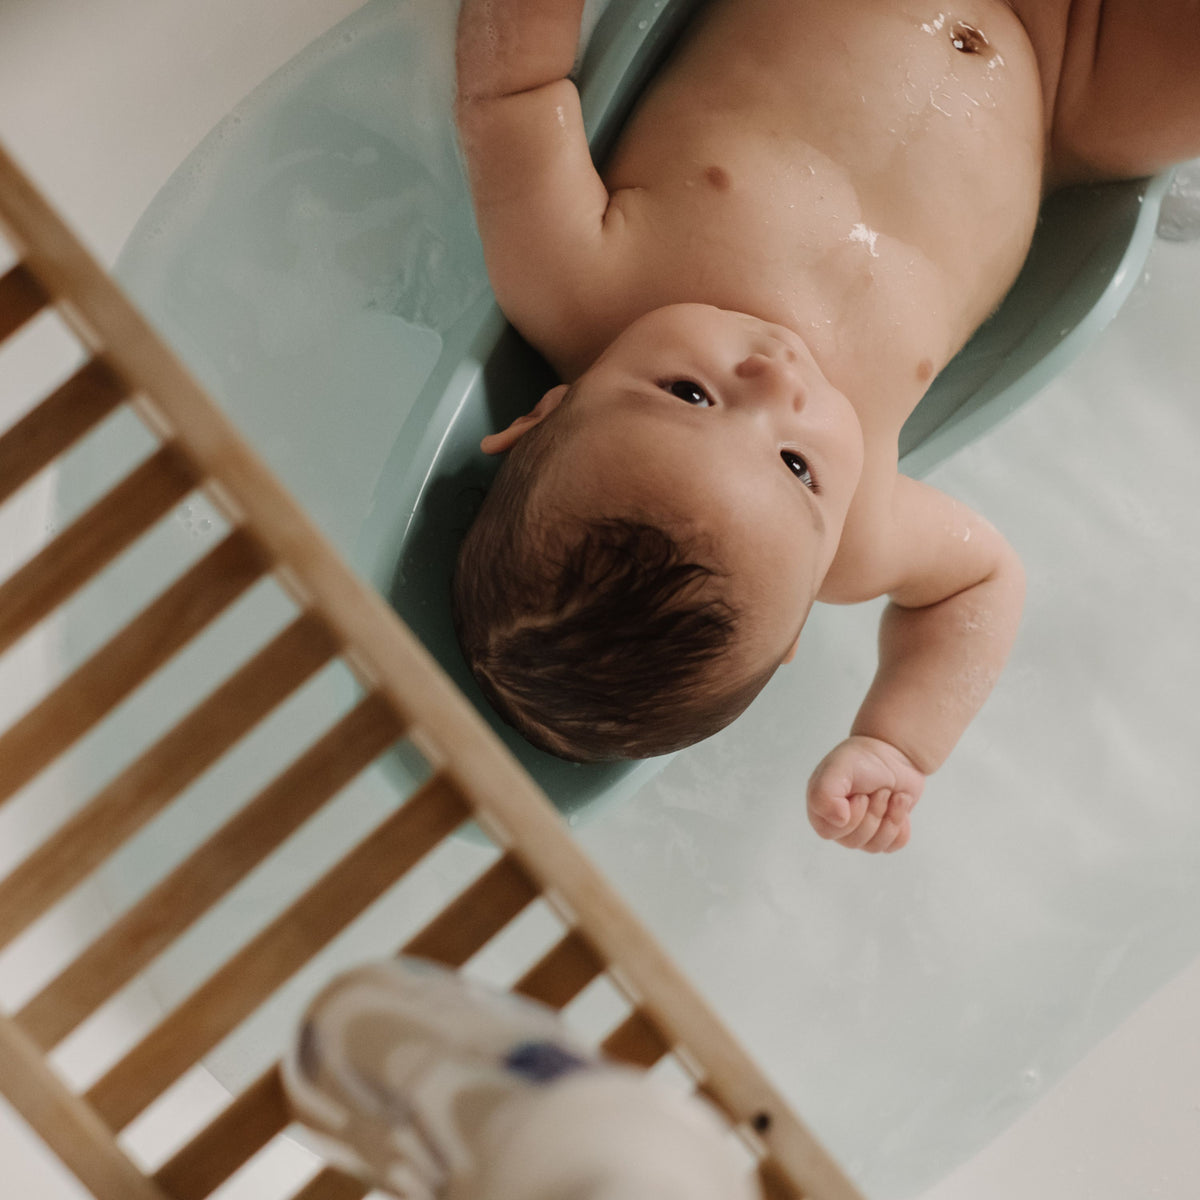 Come lavare la testa al neonato: i consigli di Babygella